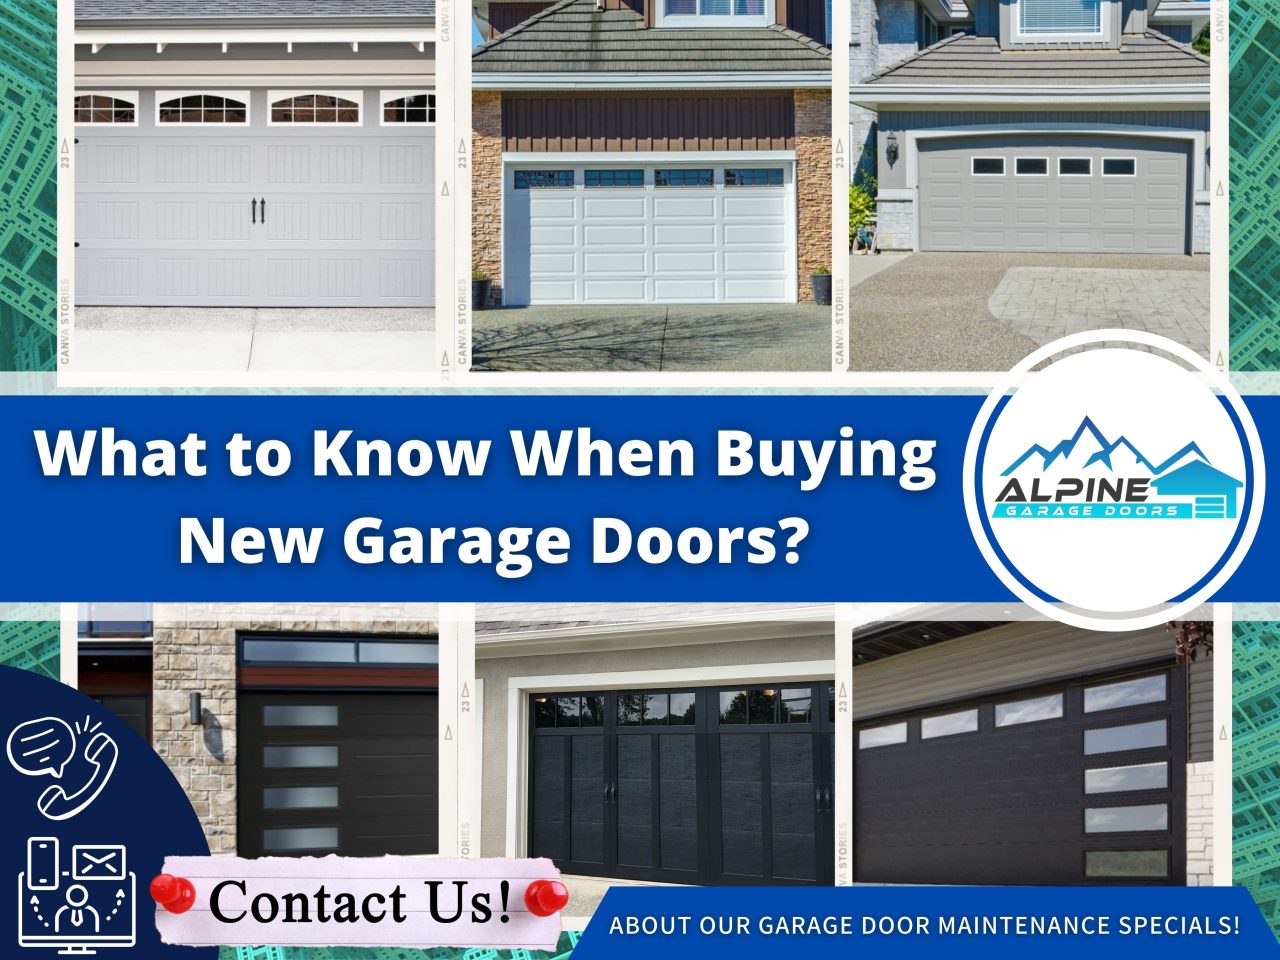 https://alpinegaragedoorstx.com/wp-content/uploads/2021/11/What_to_Know_When_Buying_New_Garage_Doors-1280x960.jpg